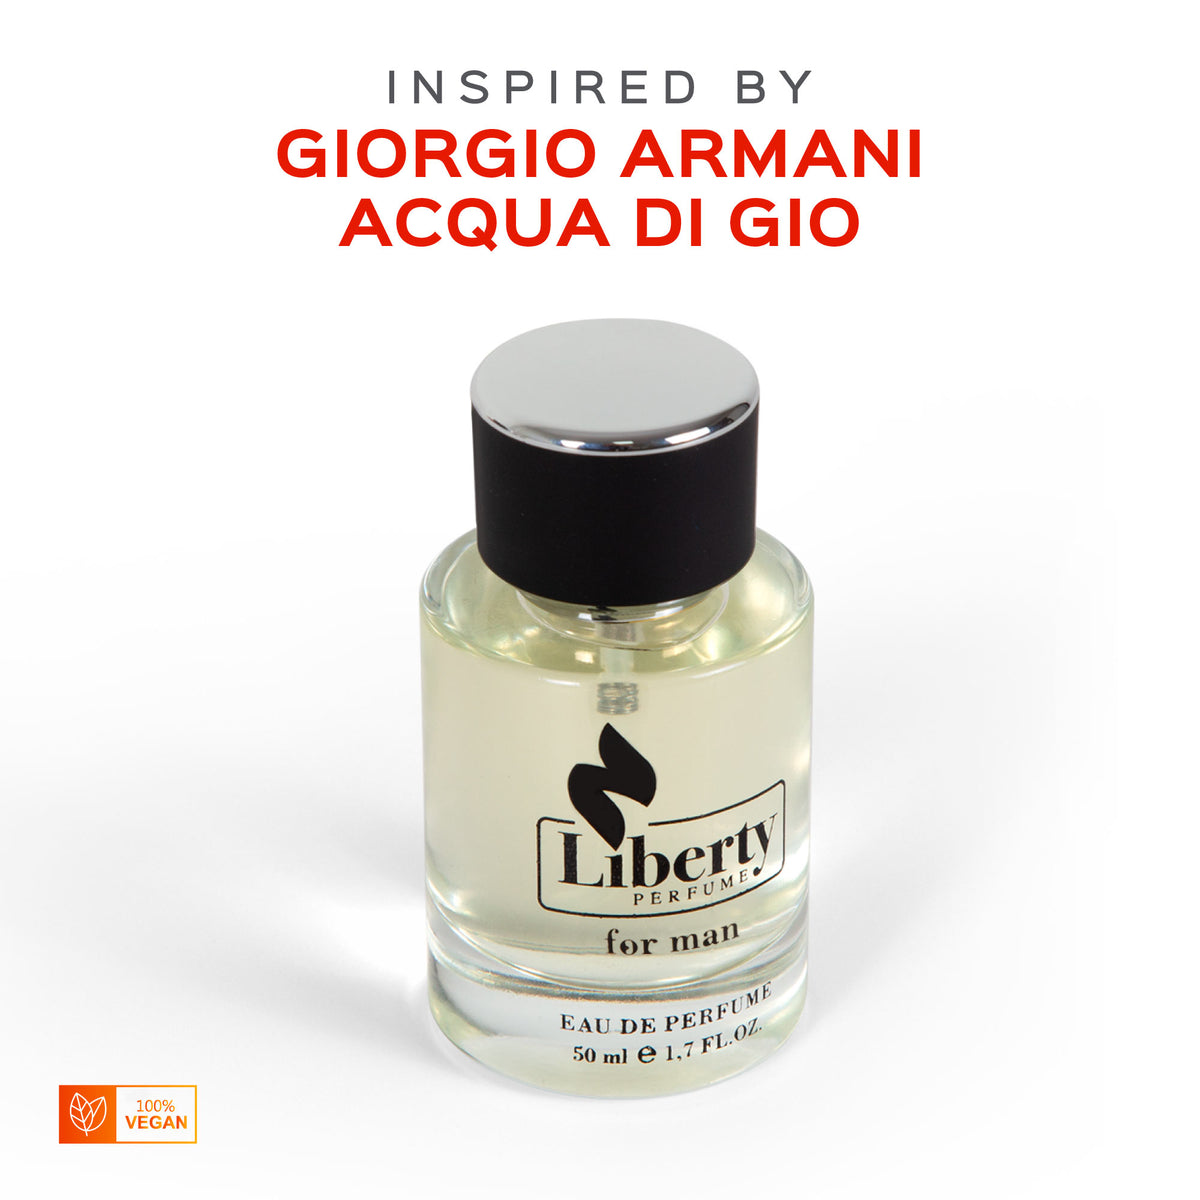 M14 Aqua Perfume - Inspired by Giorgio Armani Acqua Di Gio